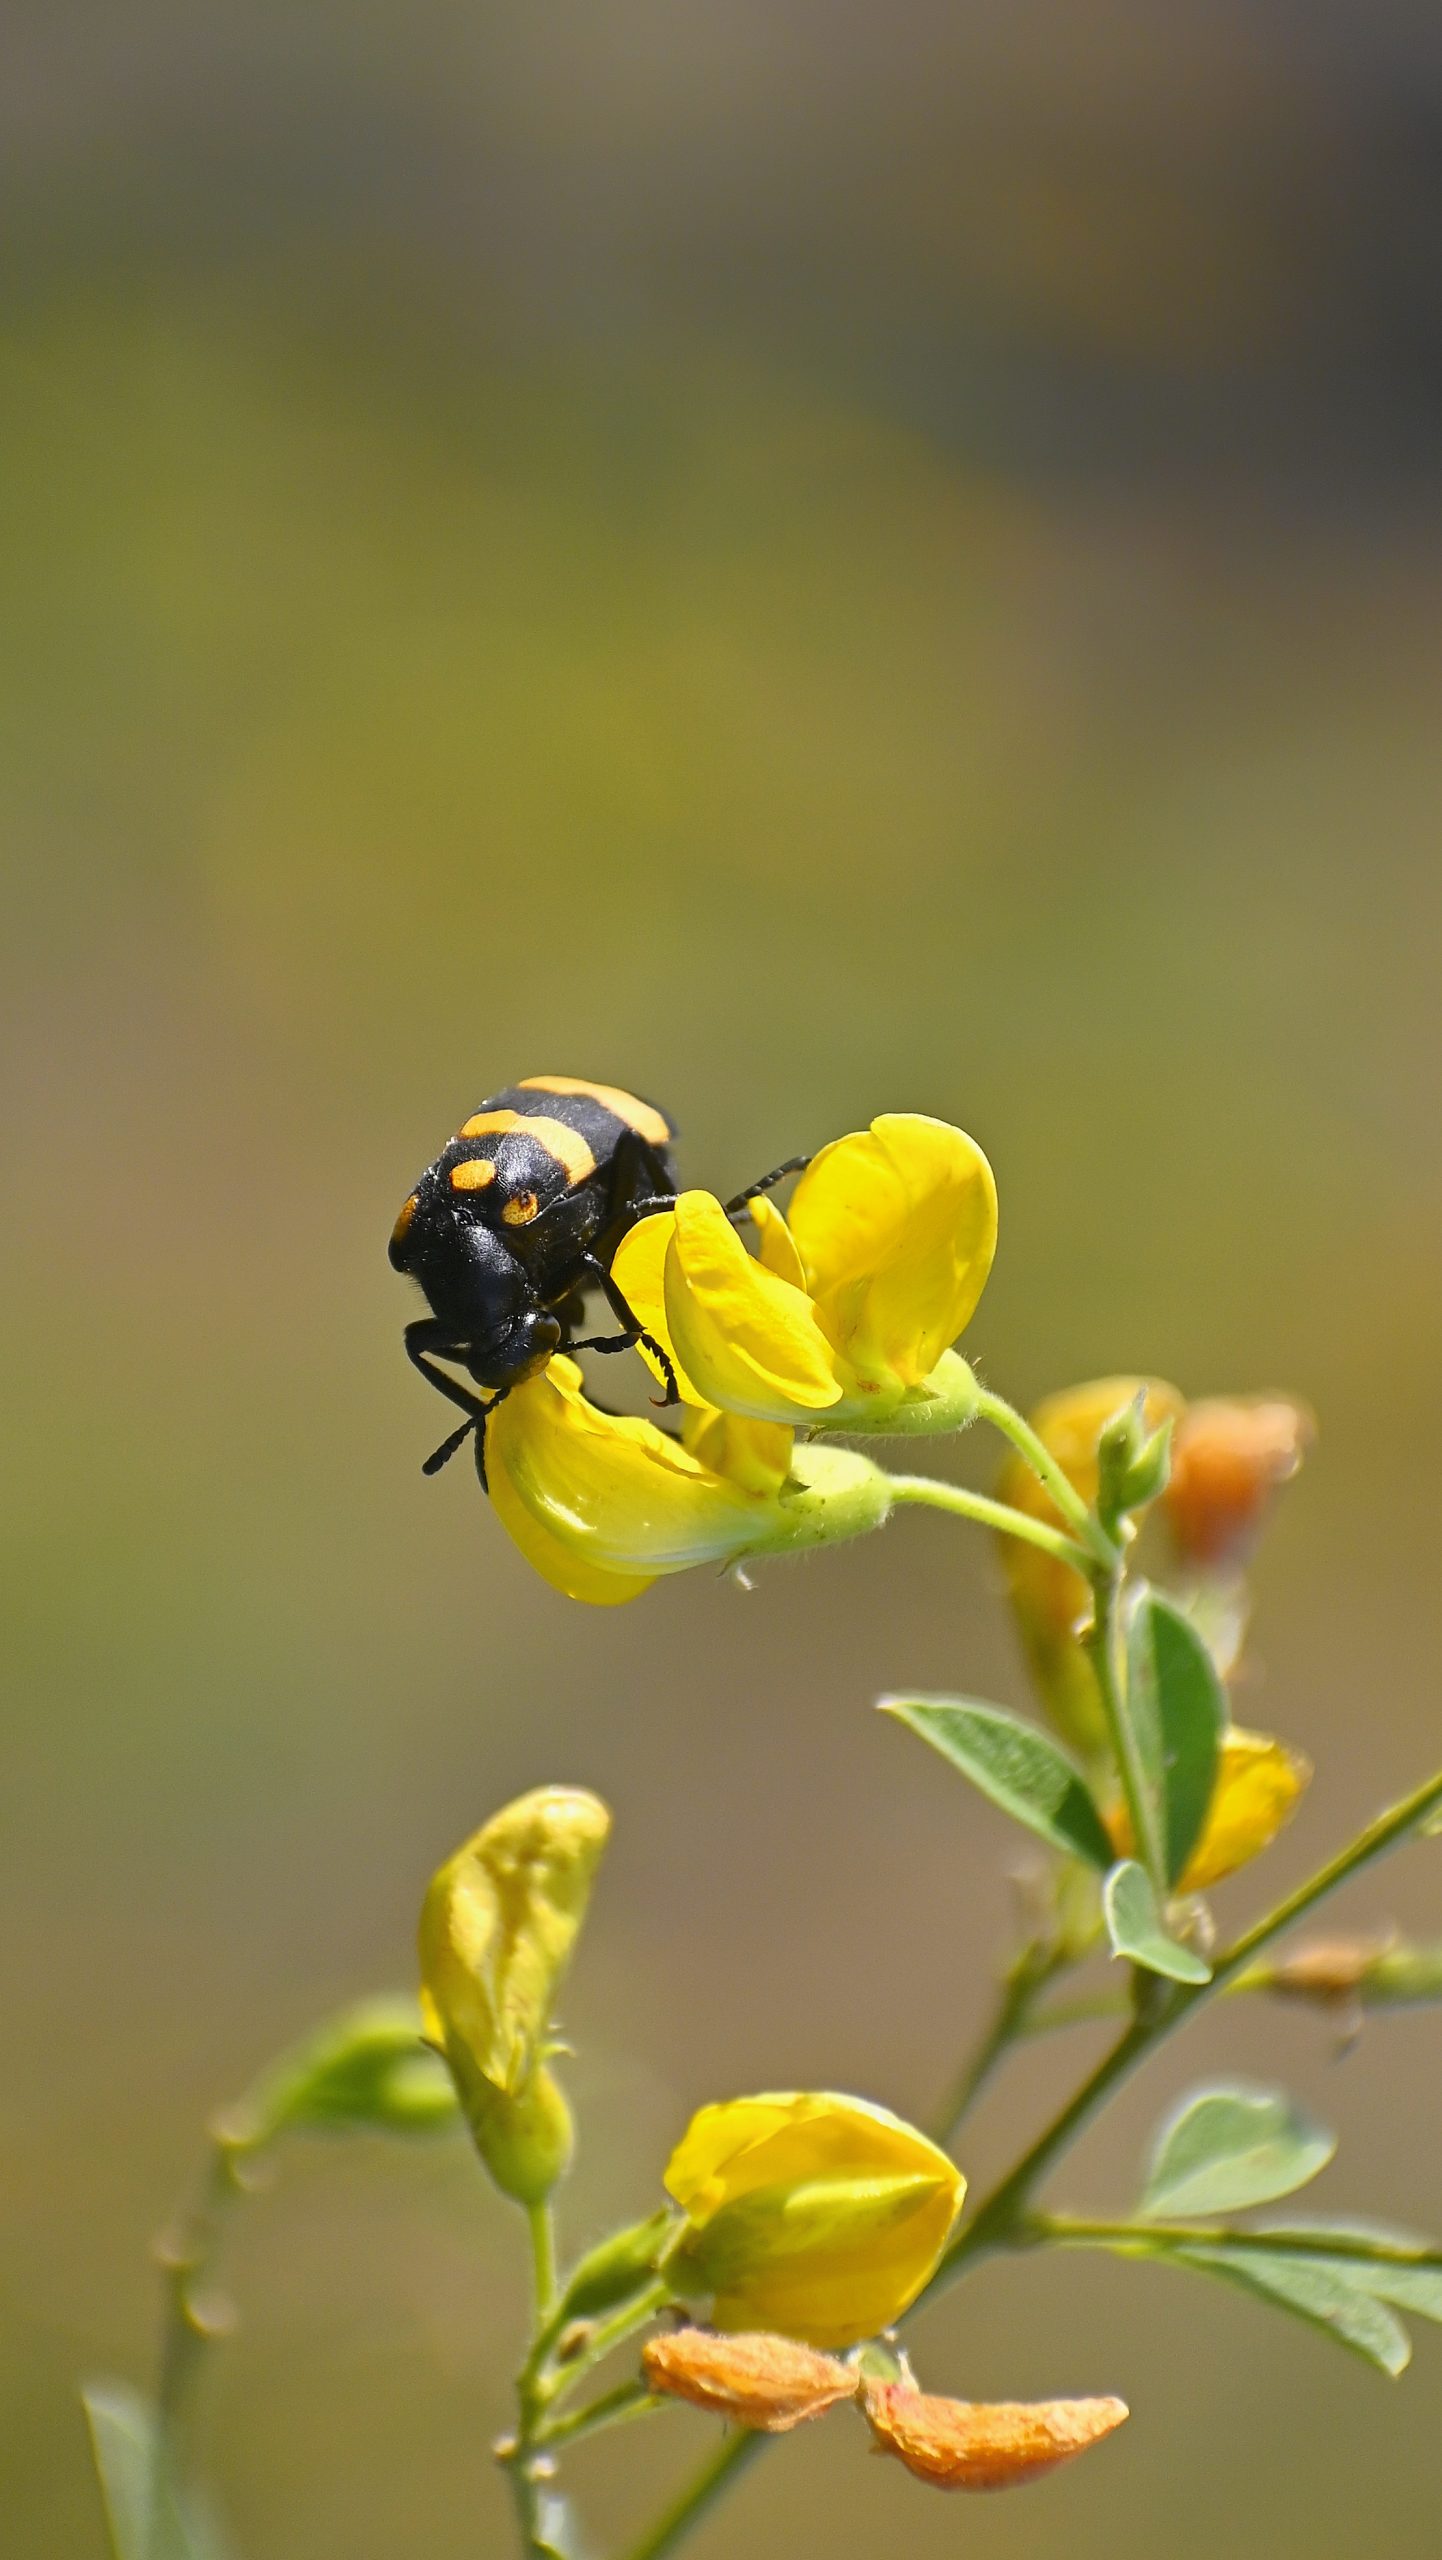 Black bug on the flower